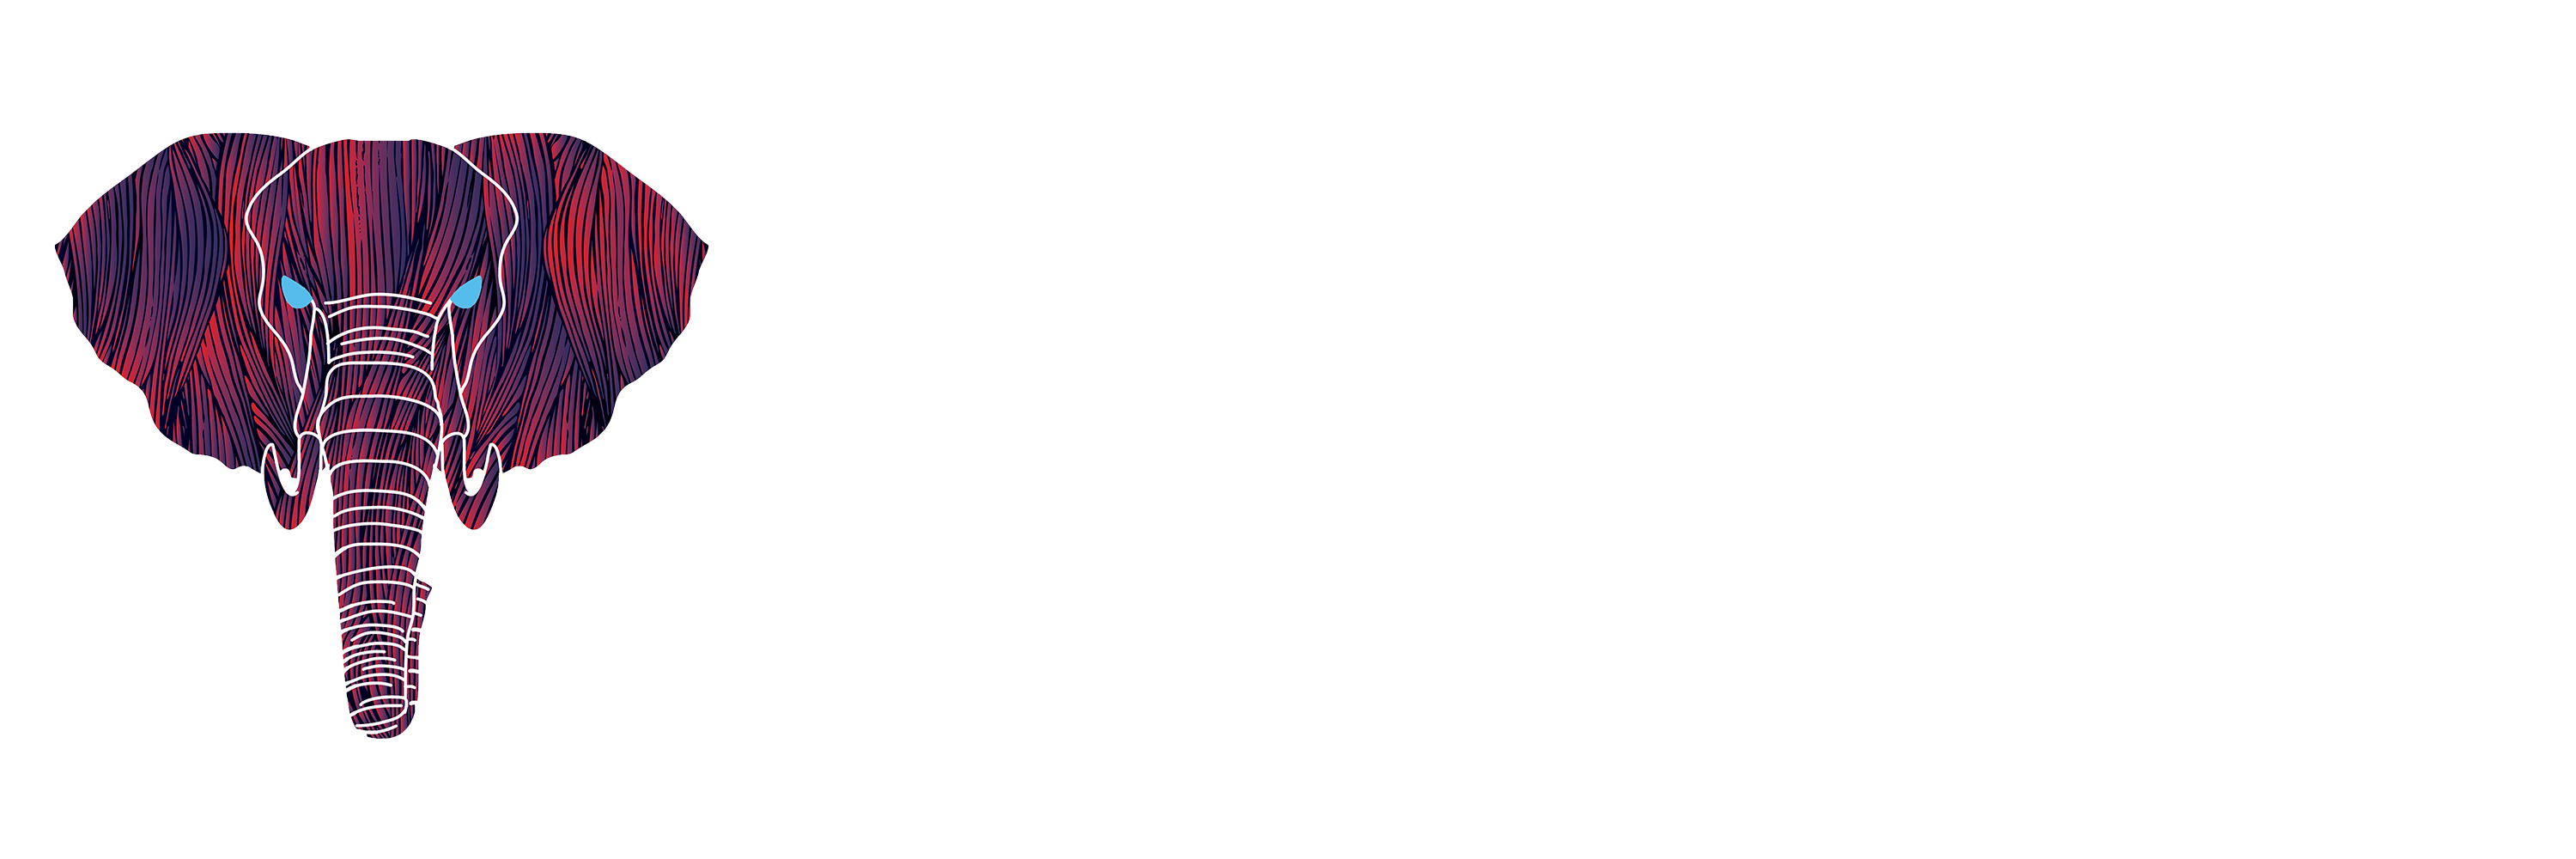 Digital Media Bros